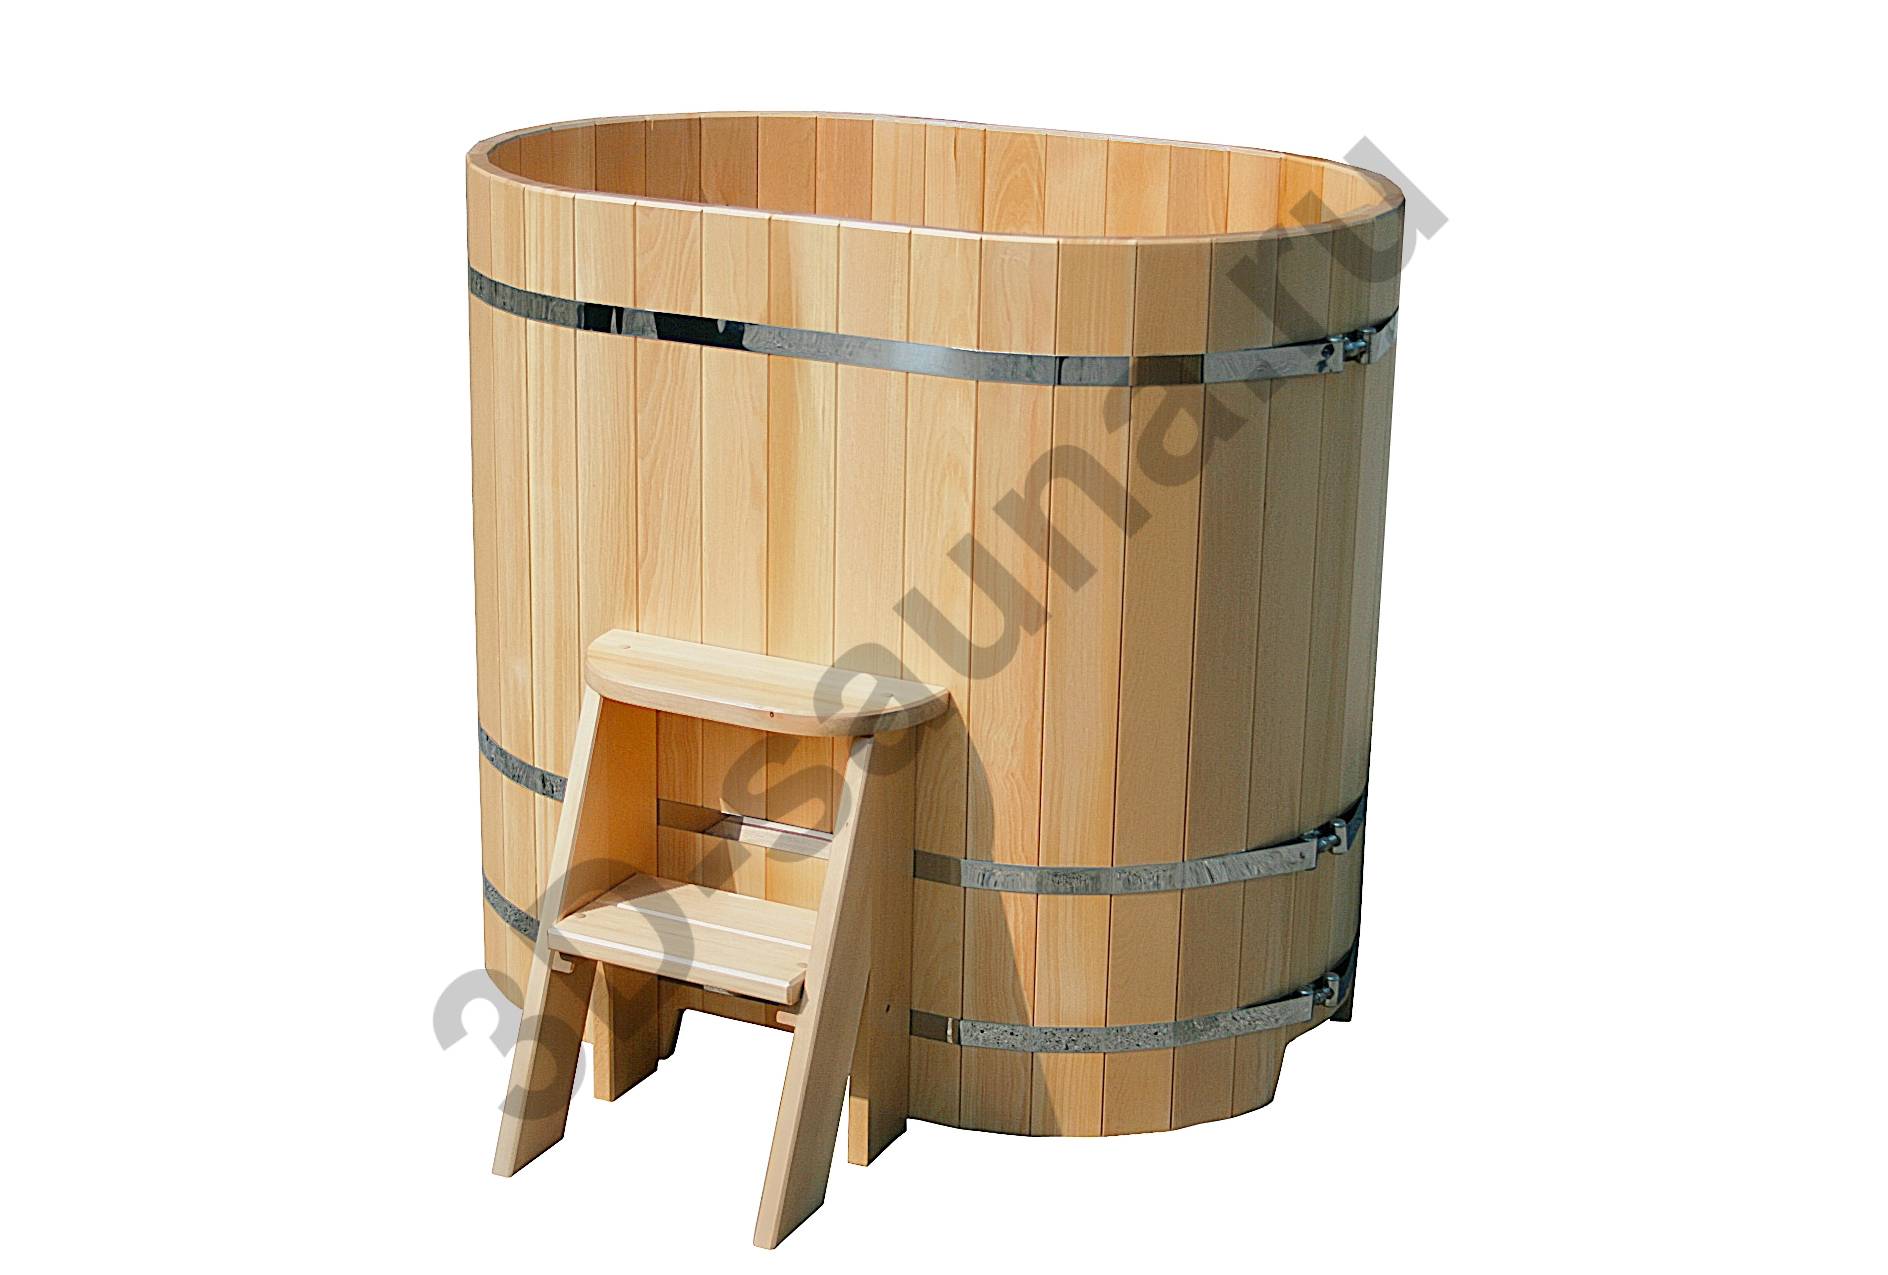 3 основных материала для деревянных купелей для бани [+видео]